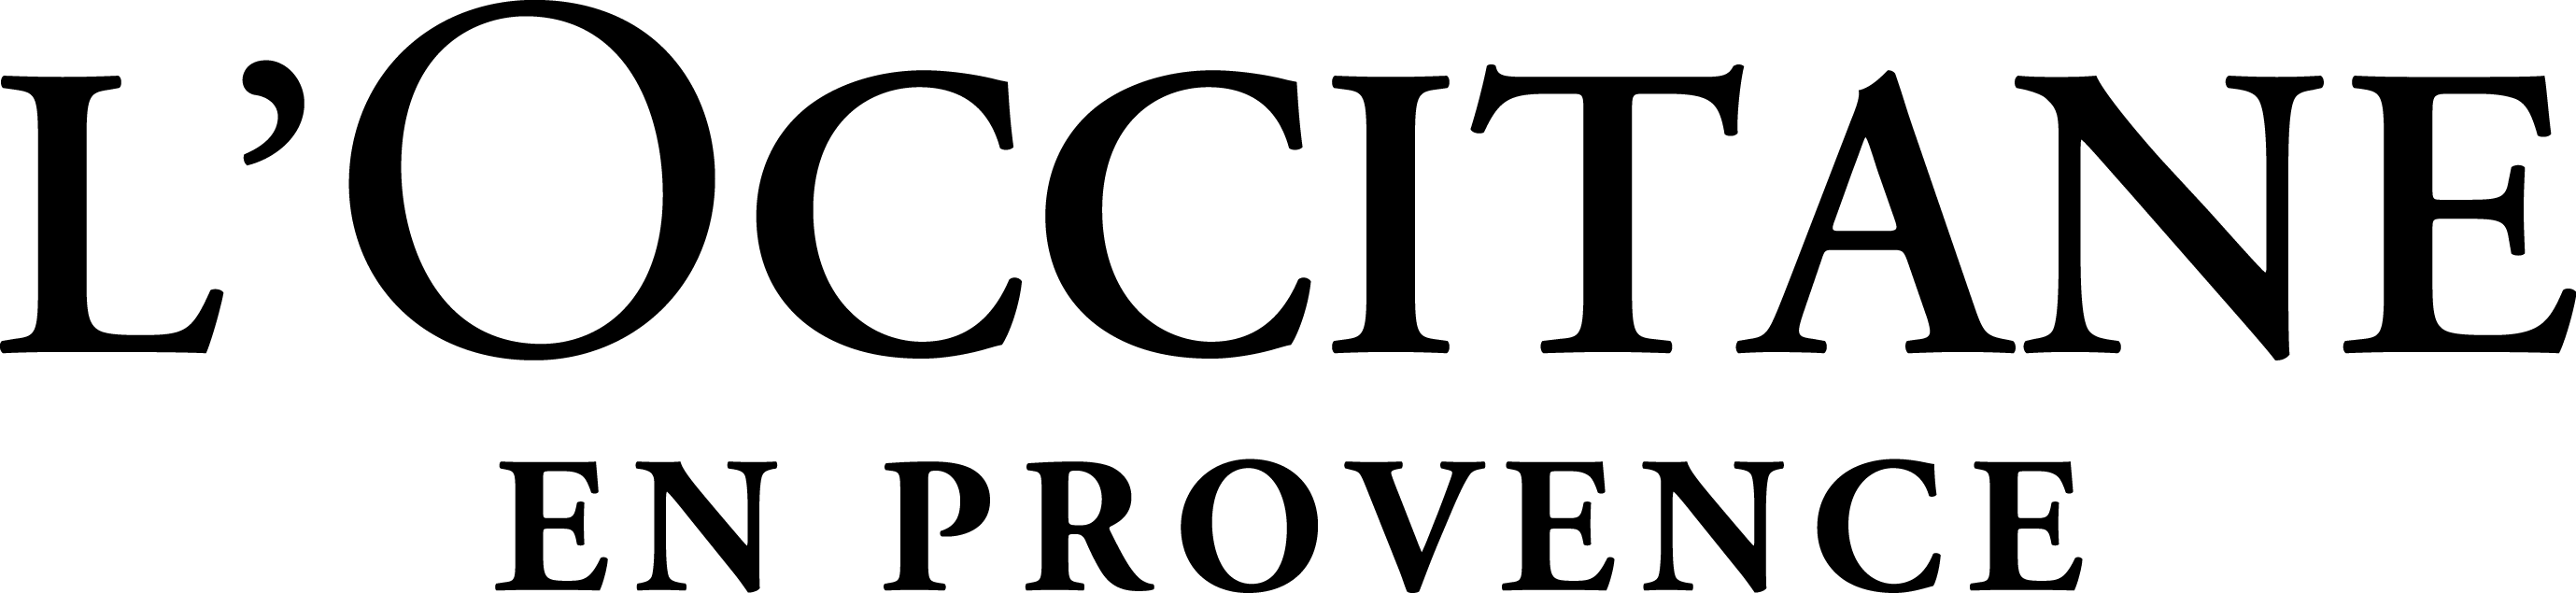 L'Occitane en provence- Construction Management Project